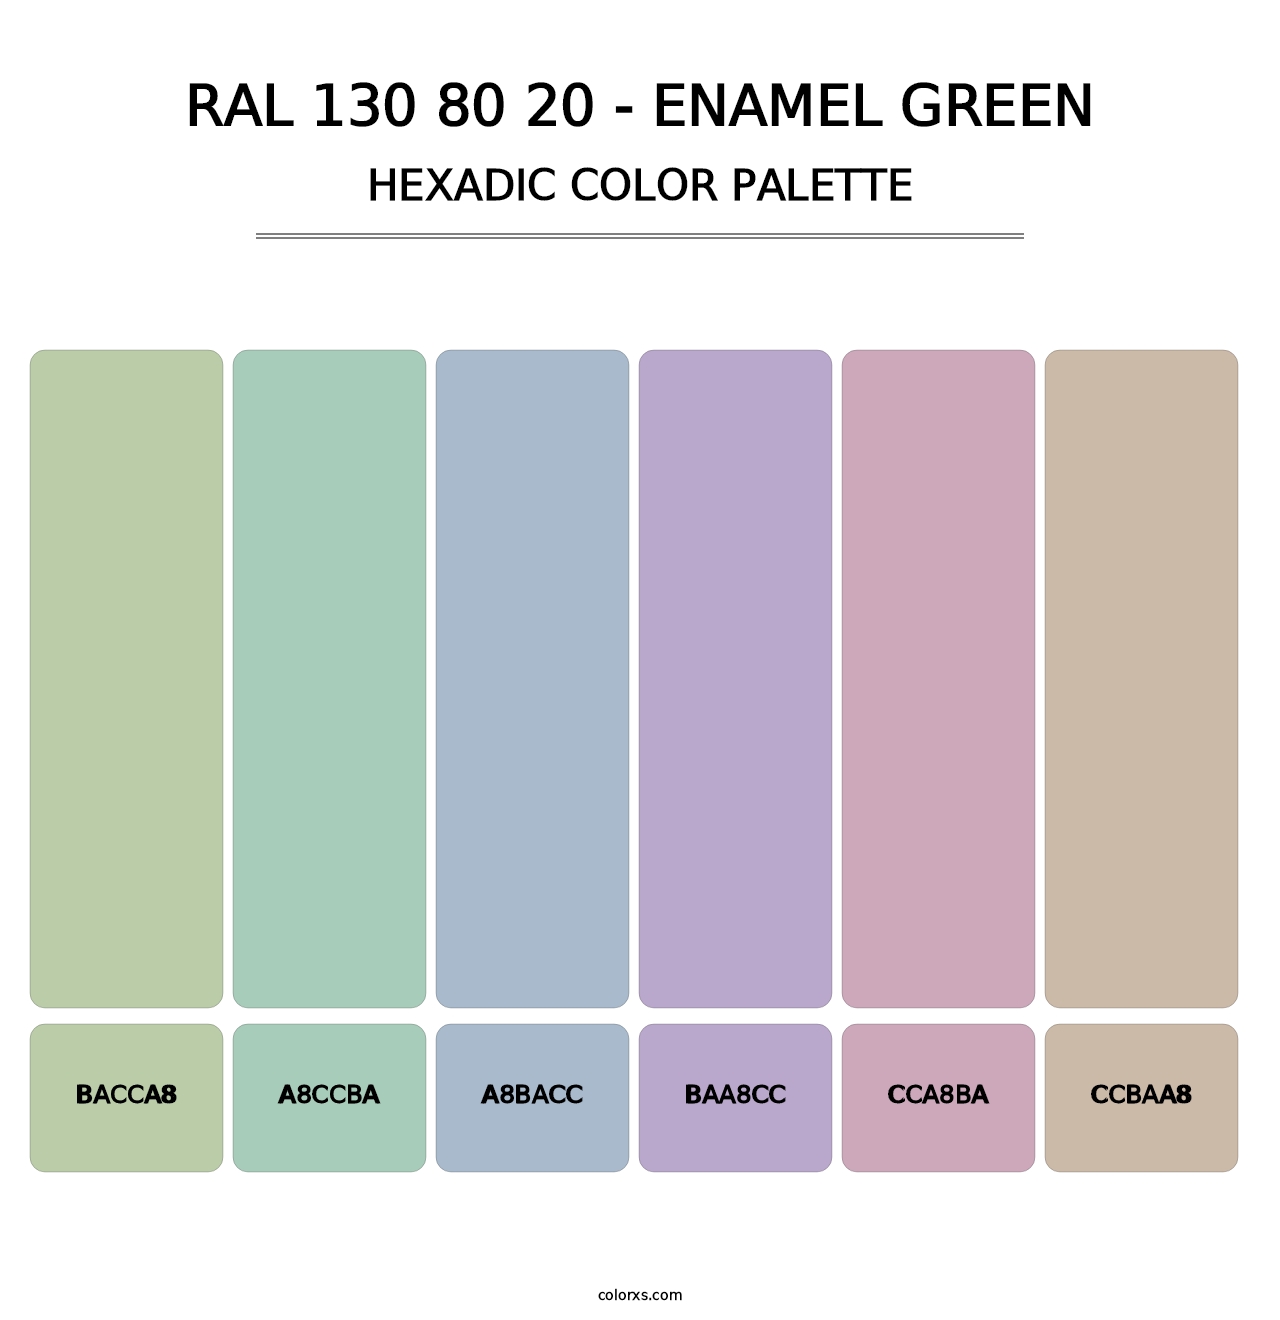 RAL 130 80 20 - Enamel Green - Hexadic Color Palette